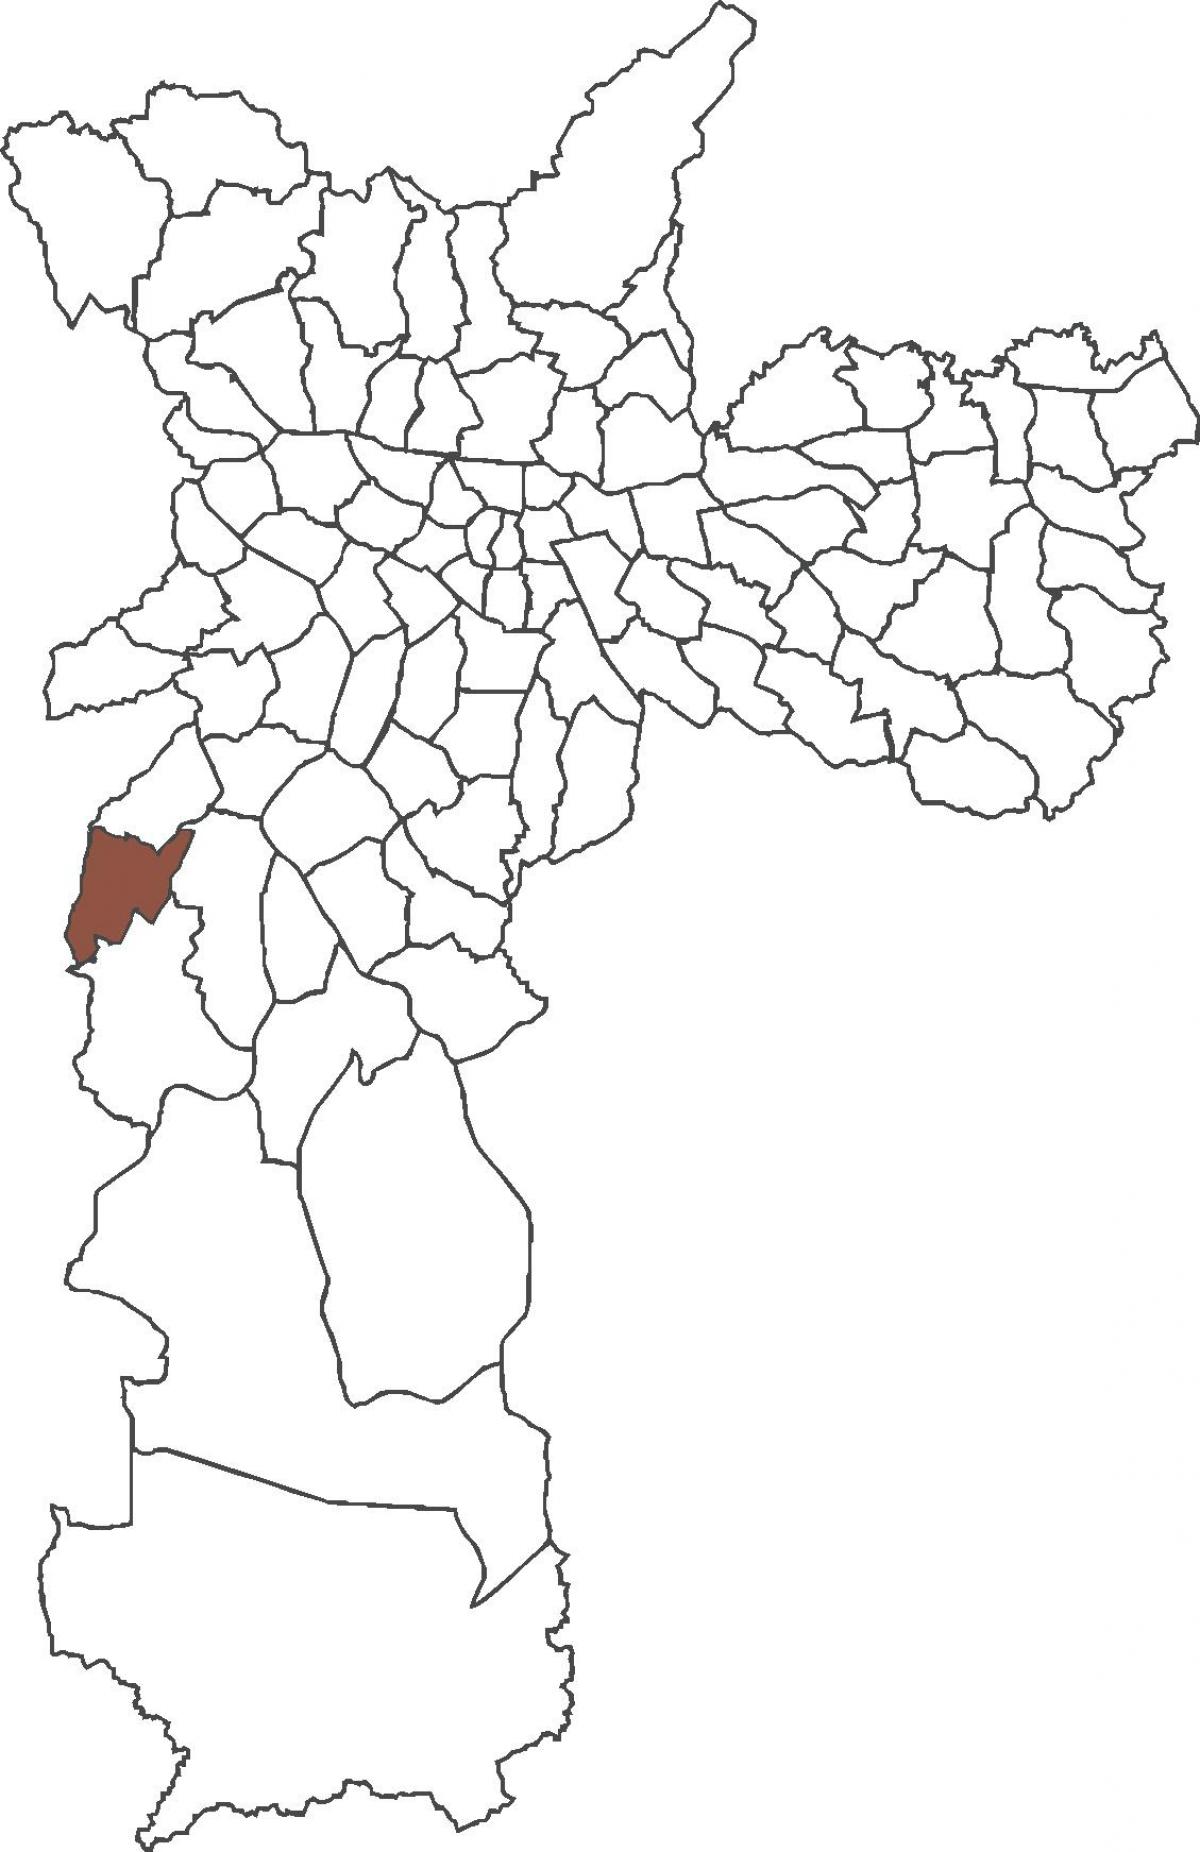 Քարտեզ Կապան Редондо շրջան